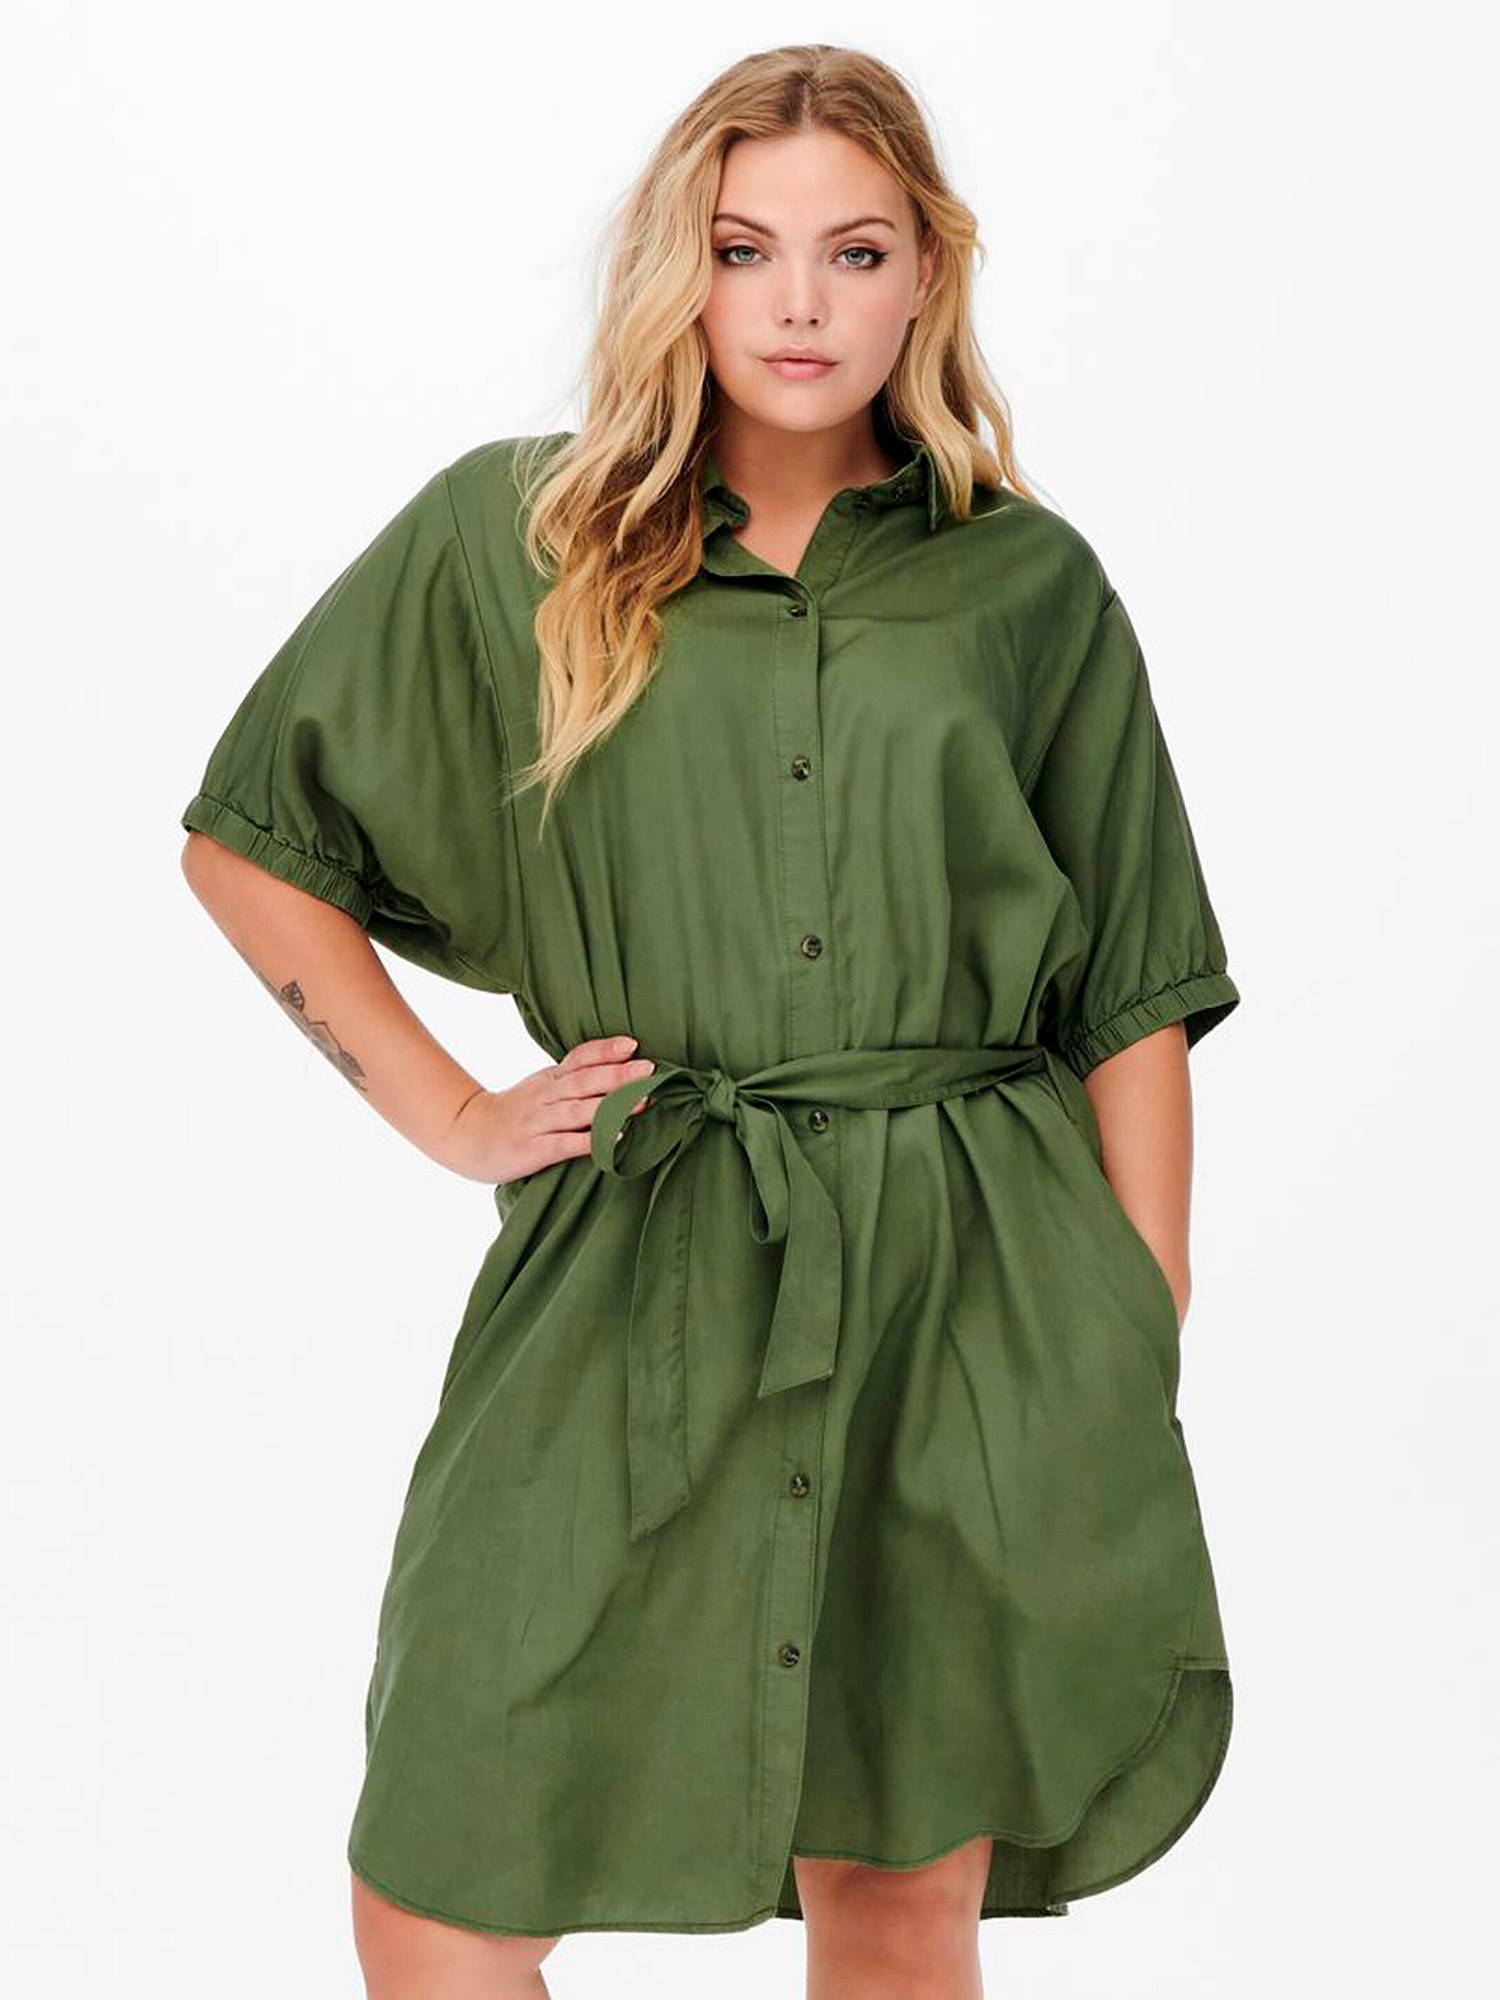 Billede af Army Grøn Skjorte Kjole I ekstra høj viskose kvalitet